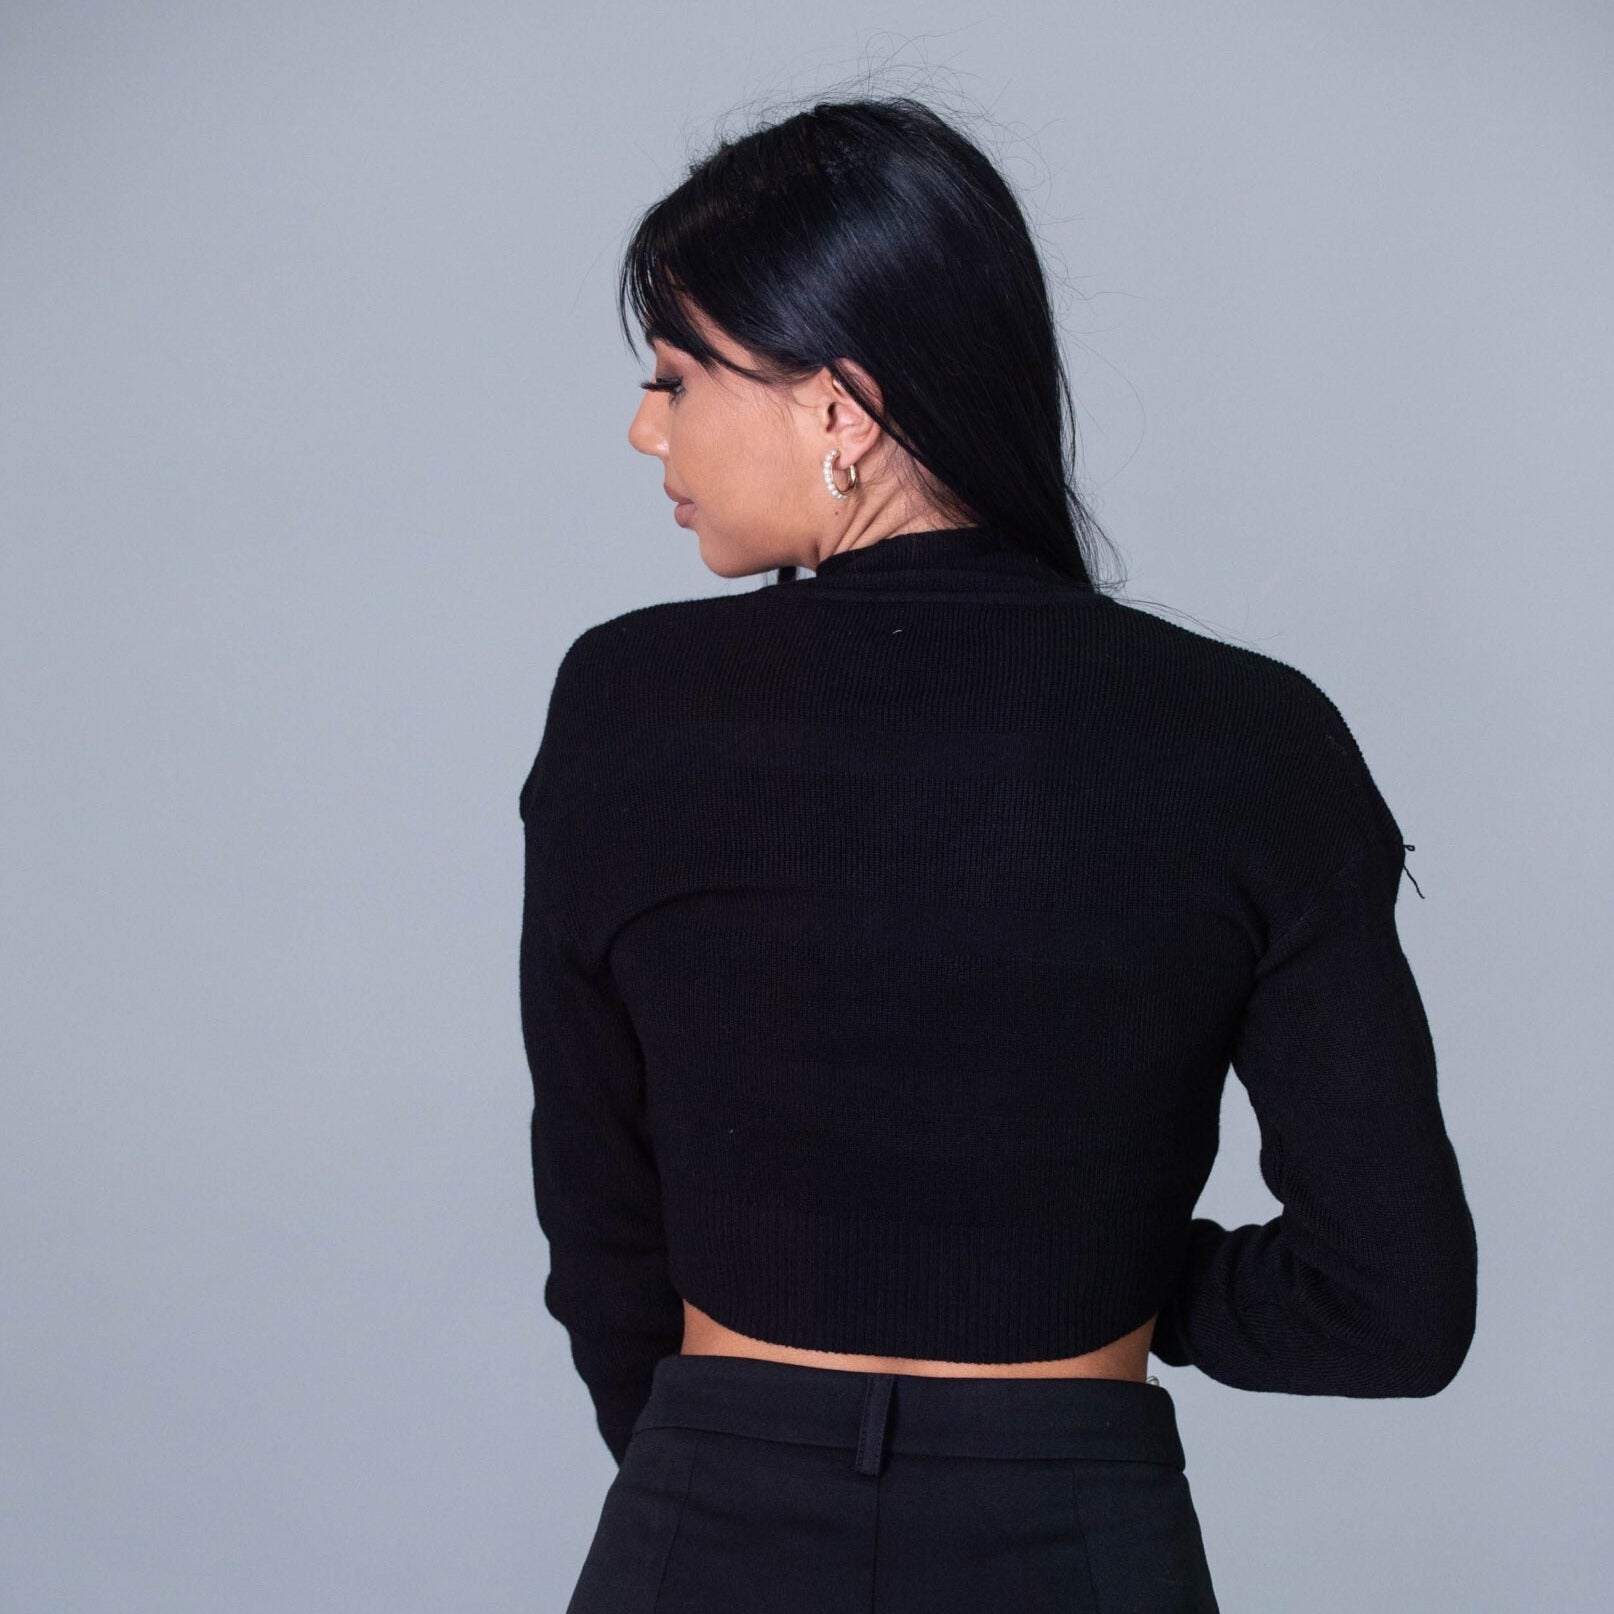 Дамска блуза LAUREN  https://bvseductive.com/products/дамска-блуза-lauren  85 % вискоза 15 % нилон стилна дамска блуза в черен цвят къс модел с нежно излъчване твоят избор за изключителна визия